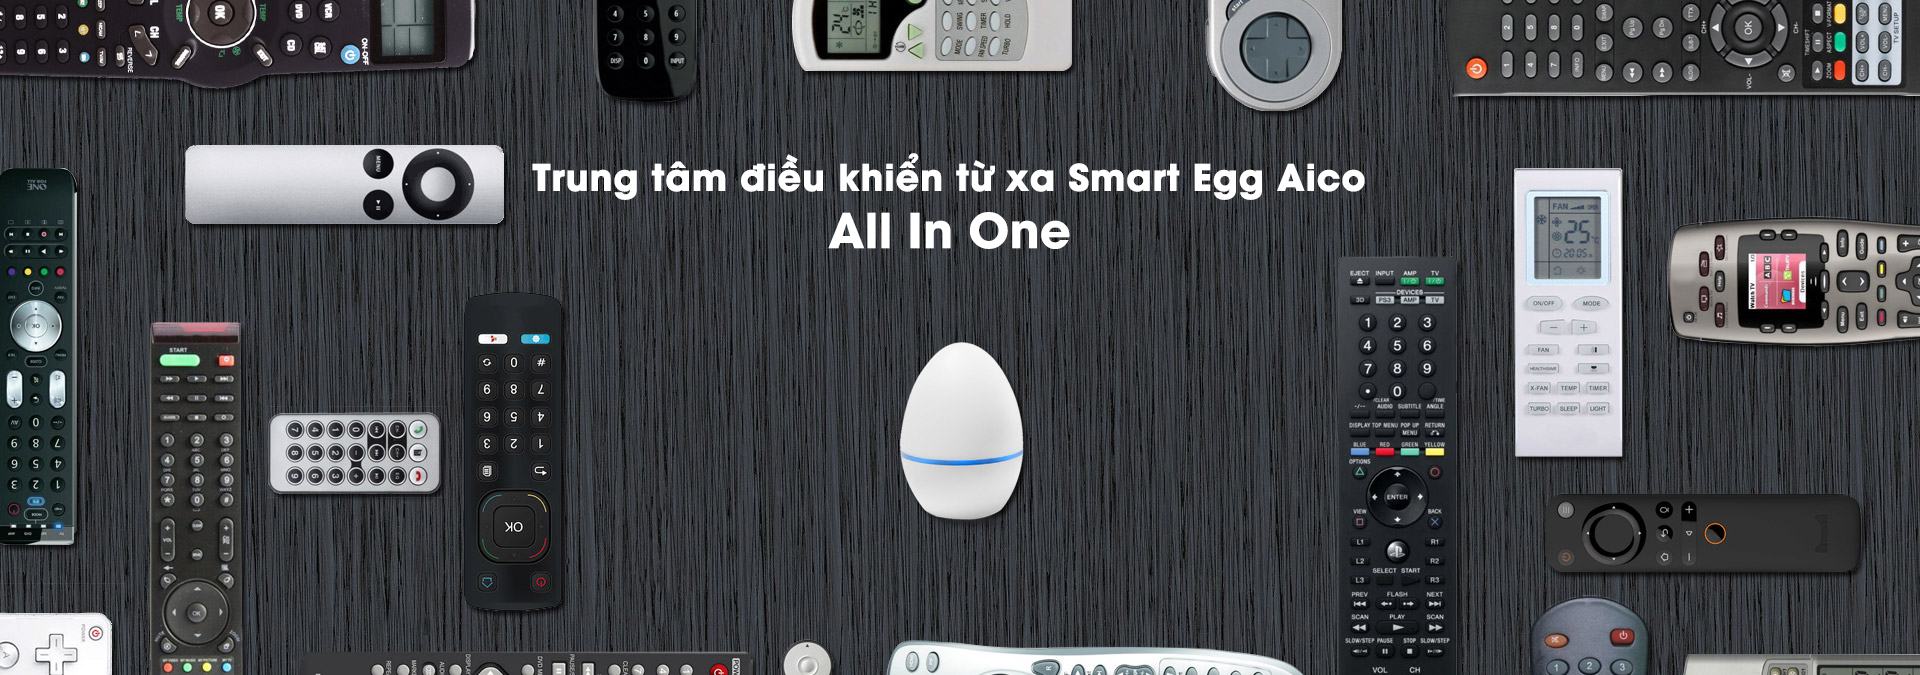 smart-egg-aico-8